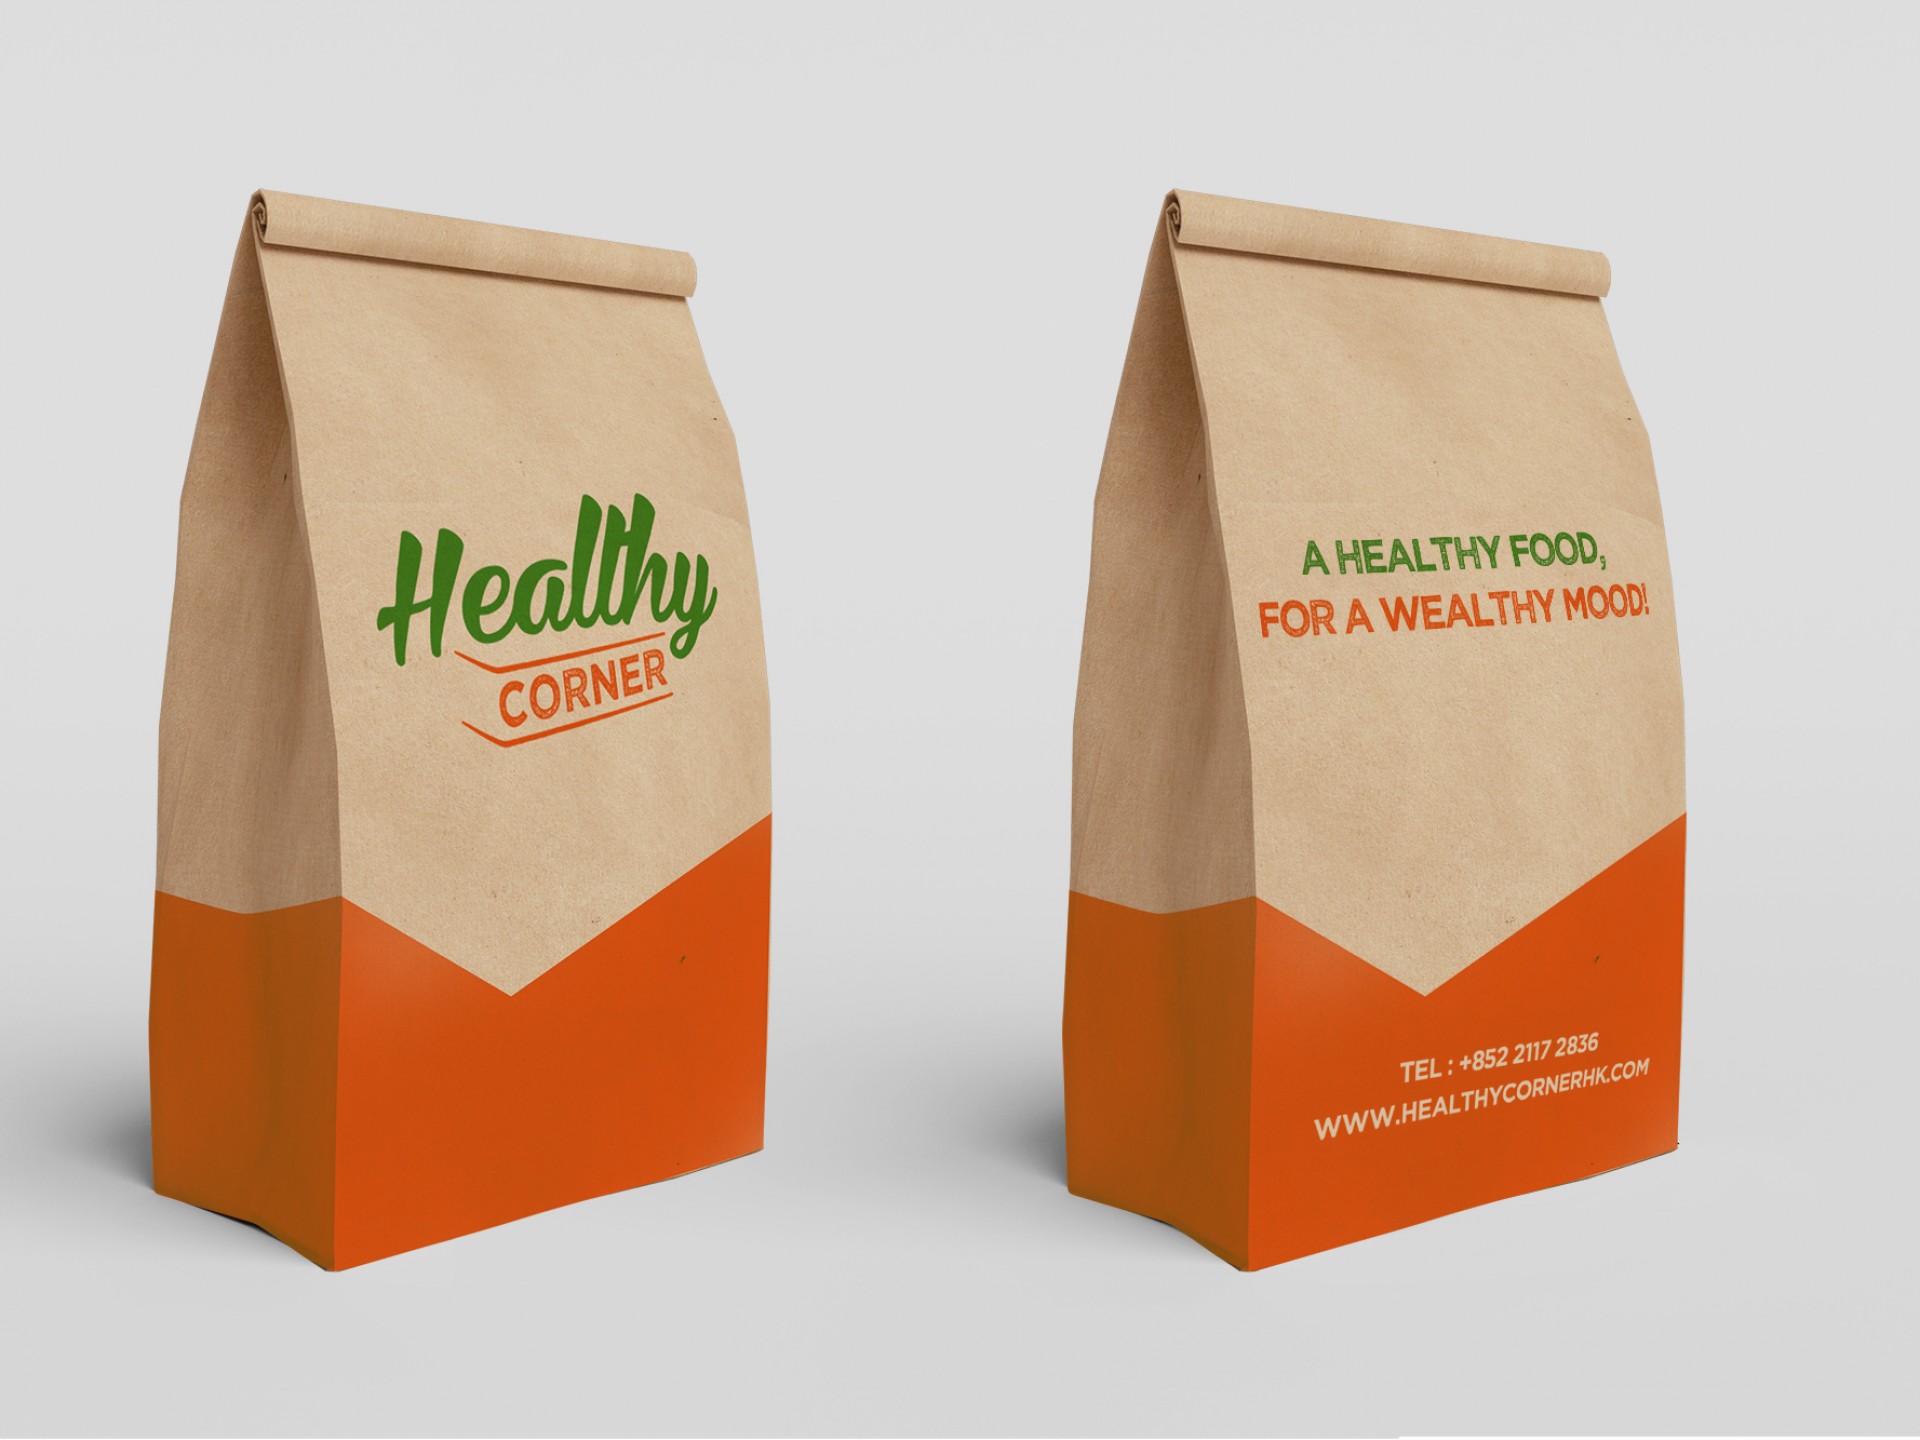 Healthy Corner - food packaging design